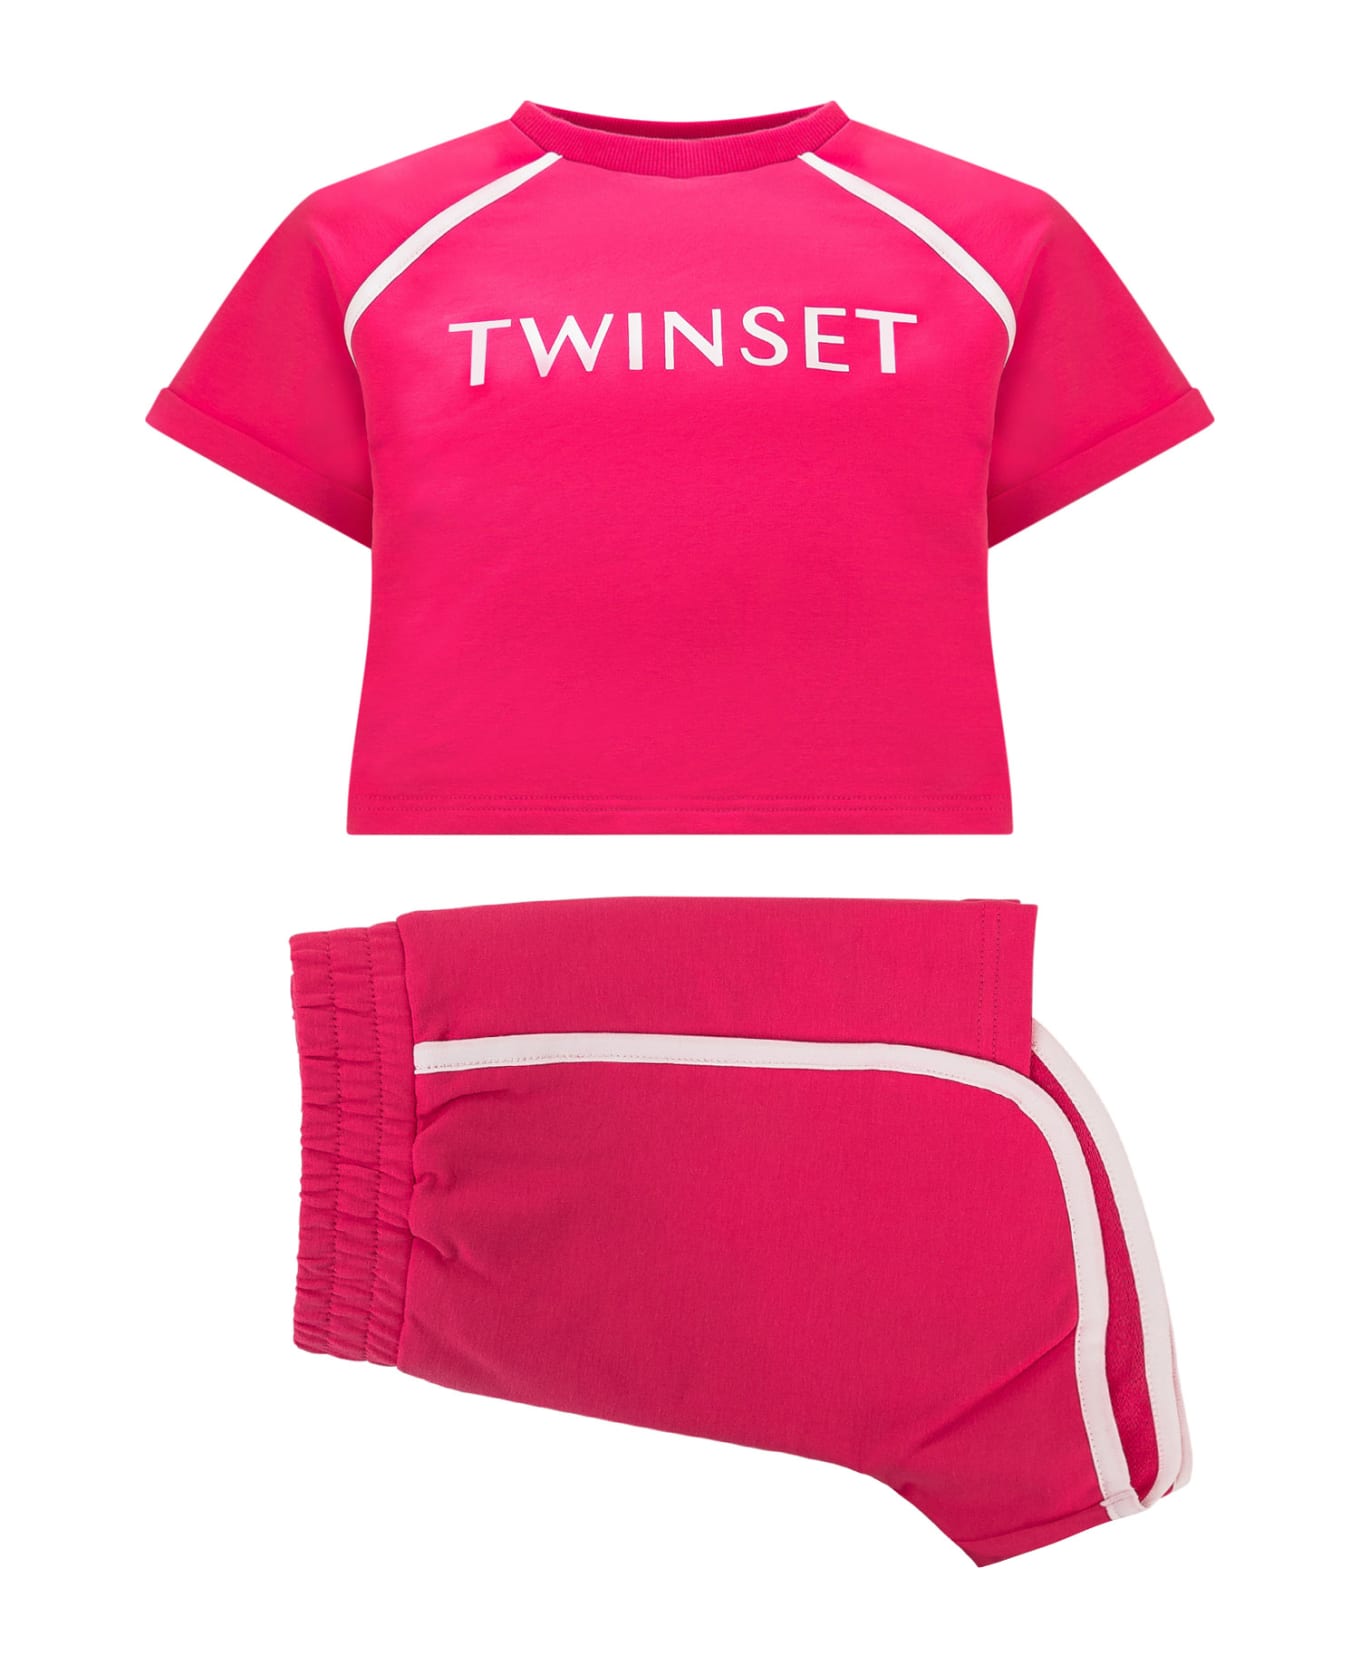 TwinSet T-shirt And Shorts Set - BIC.LUCENT WHITE/FUCHSIA PURPLE